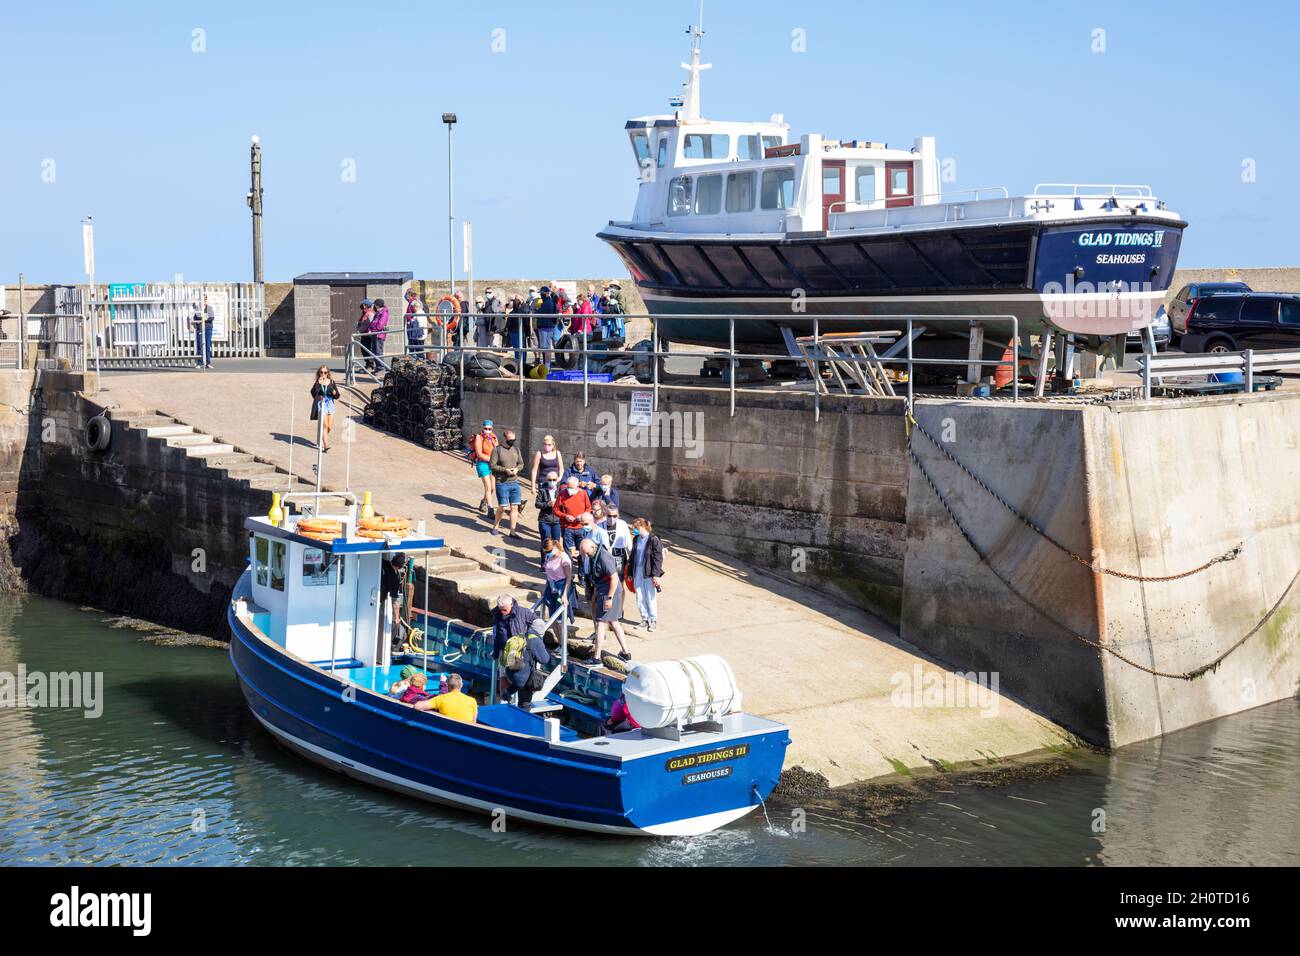 Les gens qui se trouvent sur un voyage touristique en bateau aux îles Farne dans Seahouses Harbour North Sunderland Harbour Northumberland Coast England GB UK Banque D'Images